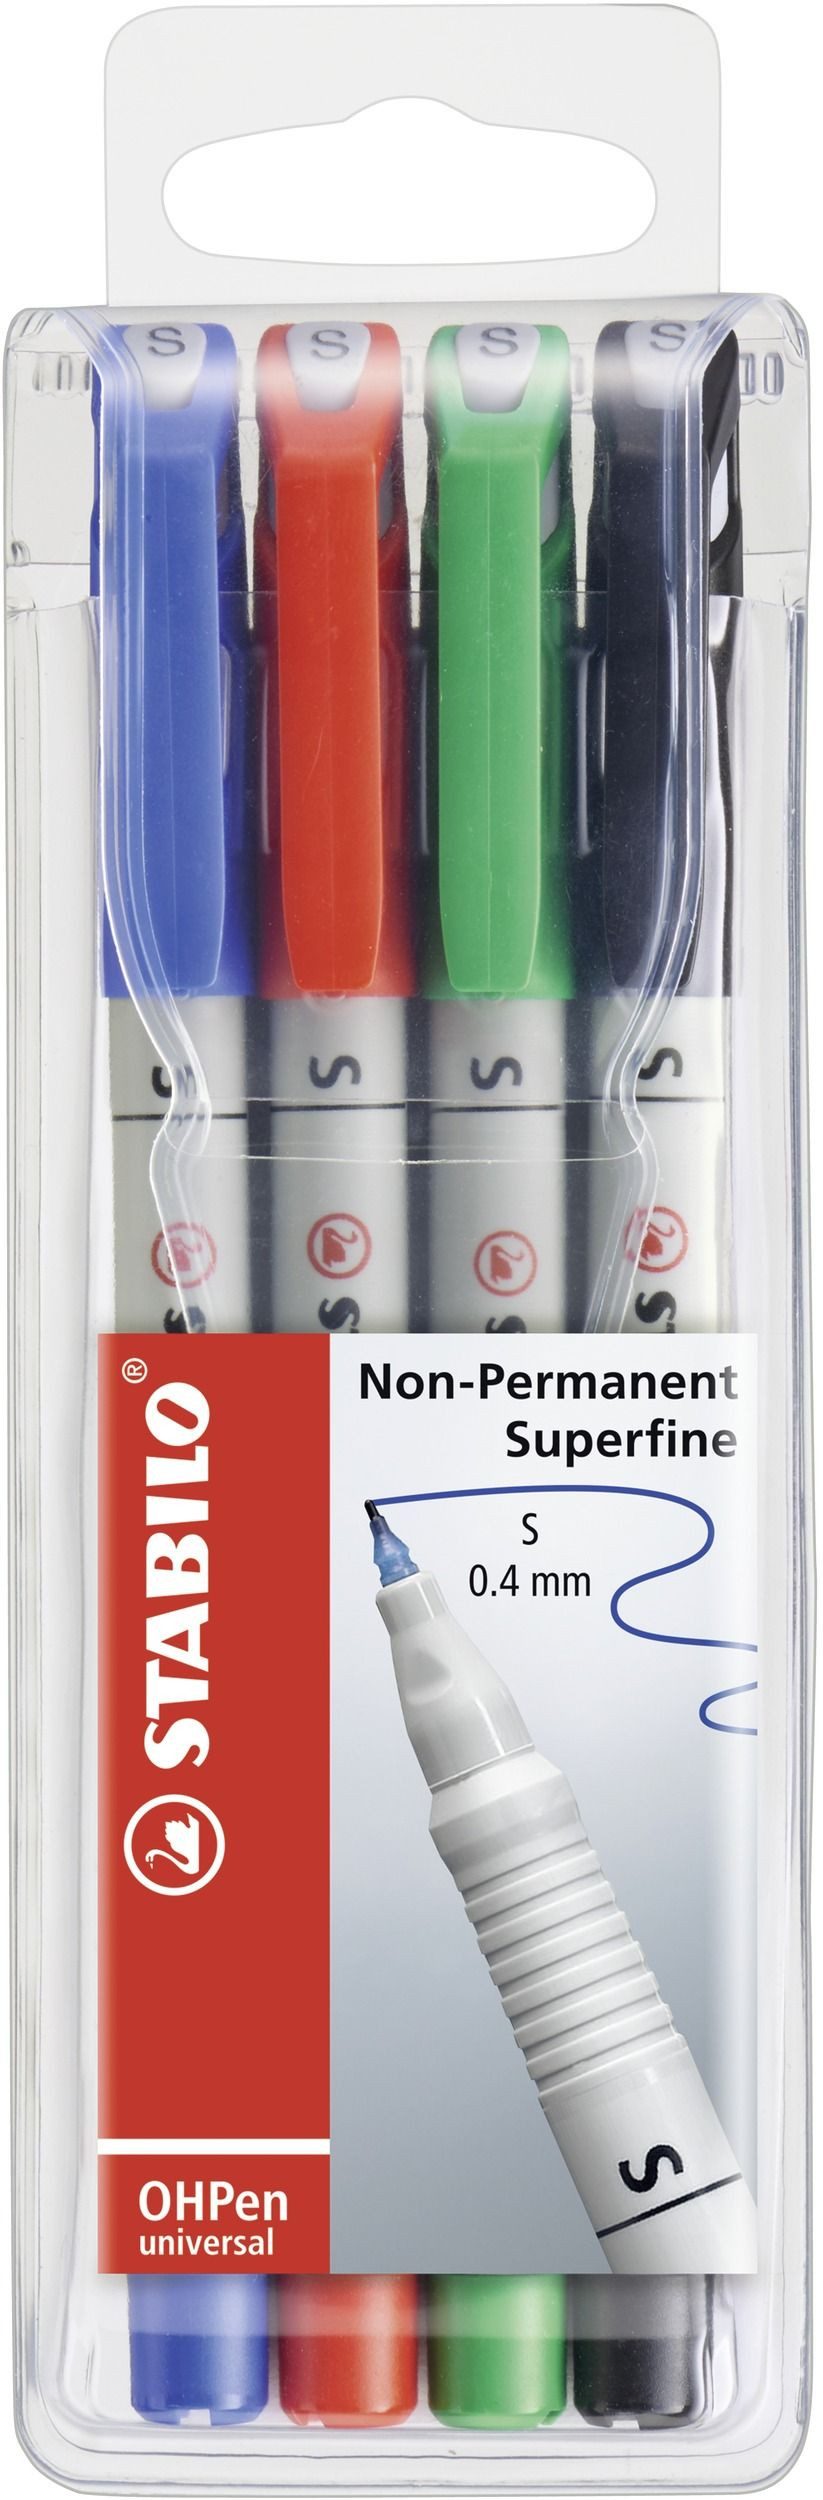 STABILO Tintenfeinschreiber STABILO Nonpermanent-Marker OHPen universal, 4er Etui